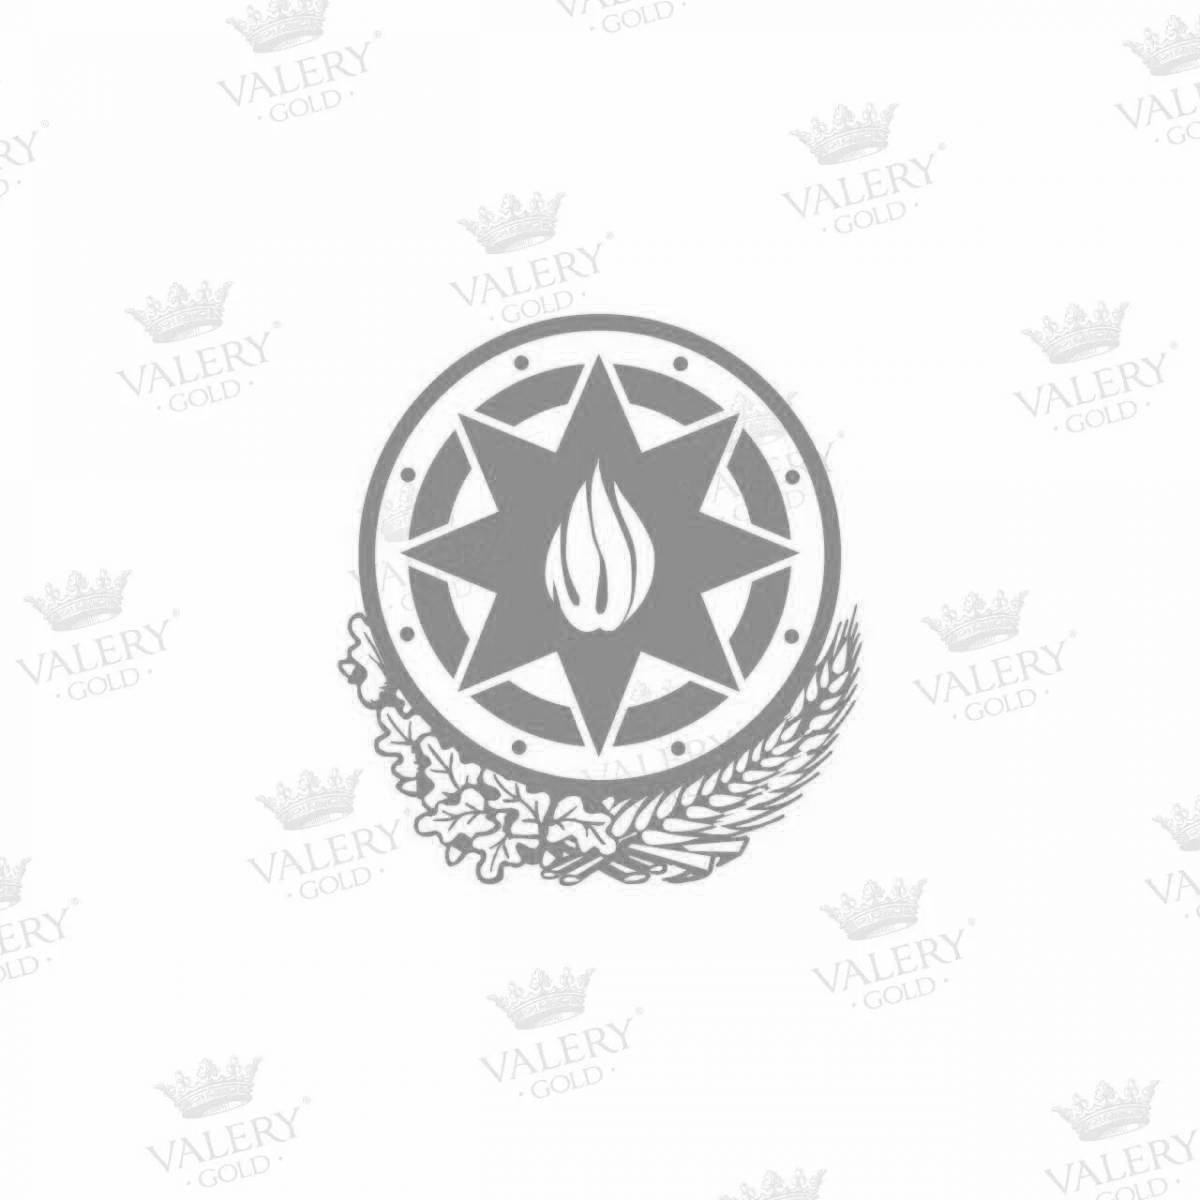 Величественный герб азербайджана